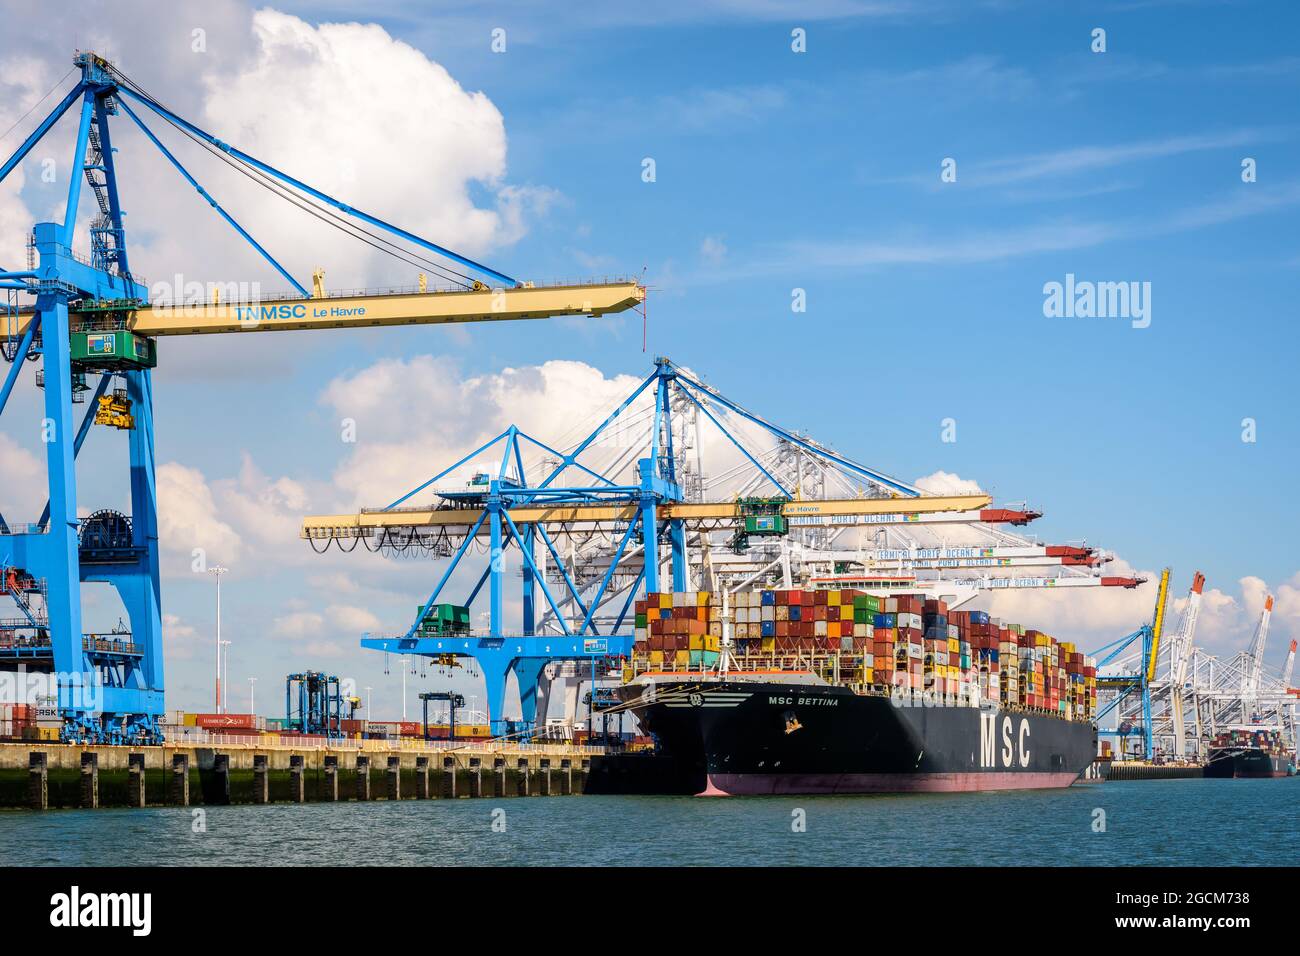 Navire-conteneur MSC Bettina amarré au terminal de conteneurs Port 2000 du Havre, en France, en train d'être déchargé par des grues portiques de conteneurs super post-panamax. Banque D'Images